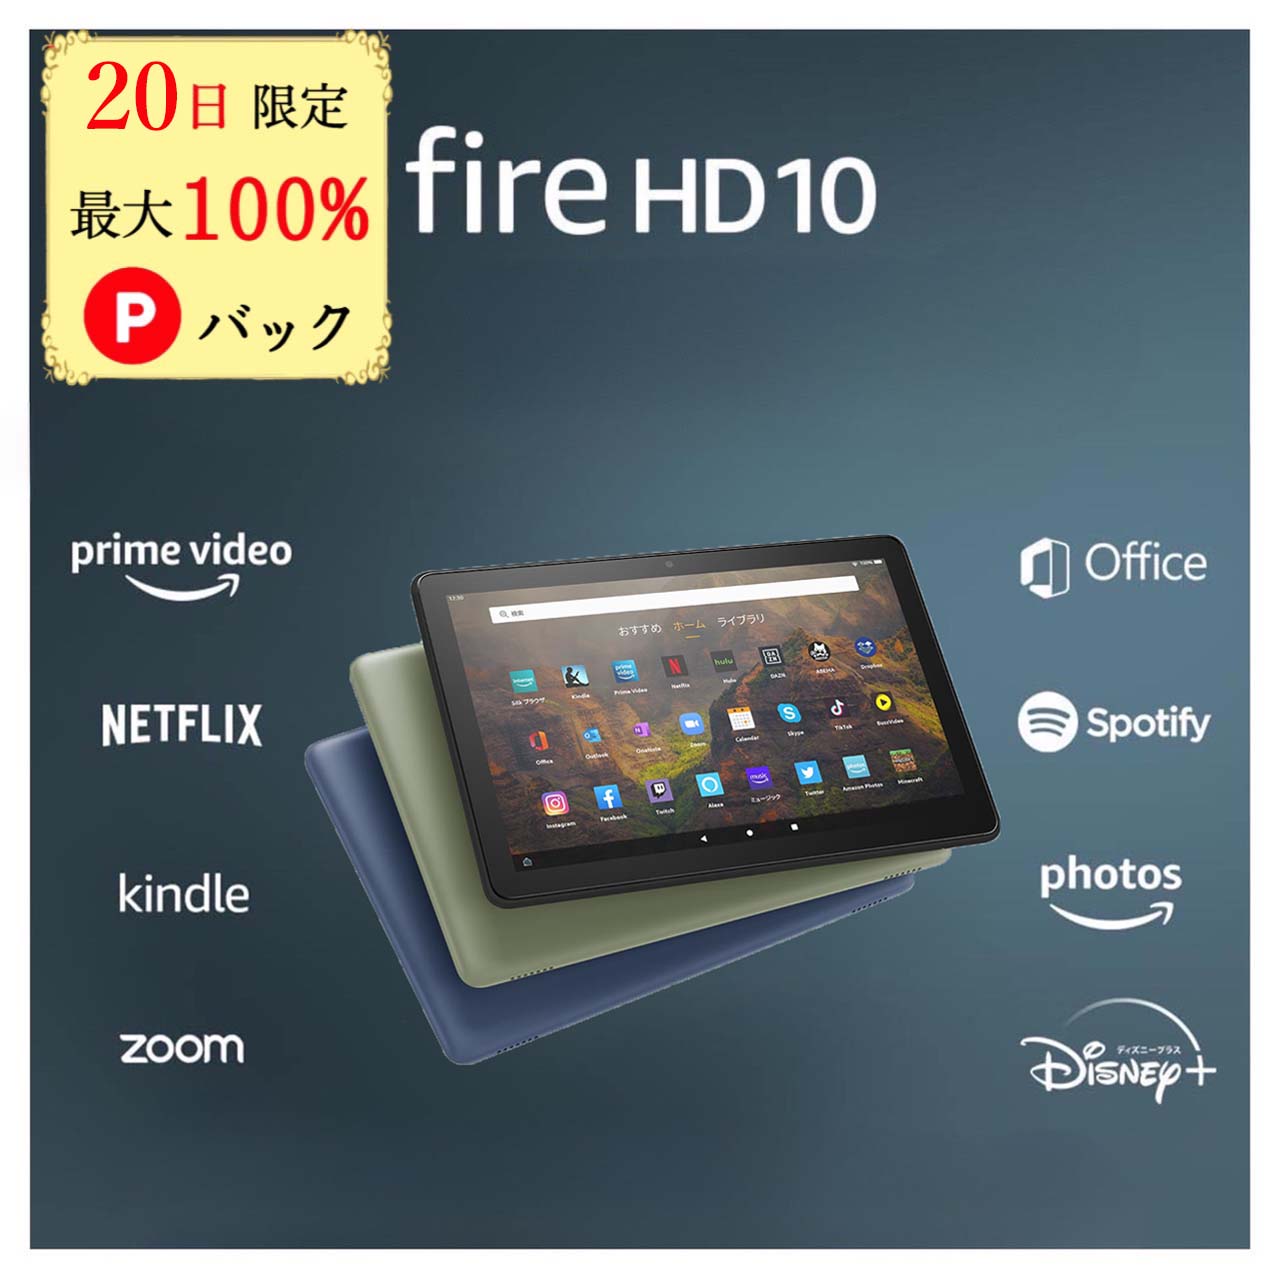 【20日限定 当選確率1/2 最大100%Pバック】 Fire HD 10 タブレット 32GB 64GB firehd10 アレクサ ブラック 新型 第13世代 アマゾン タ..